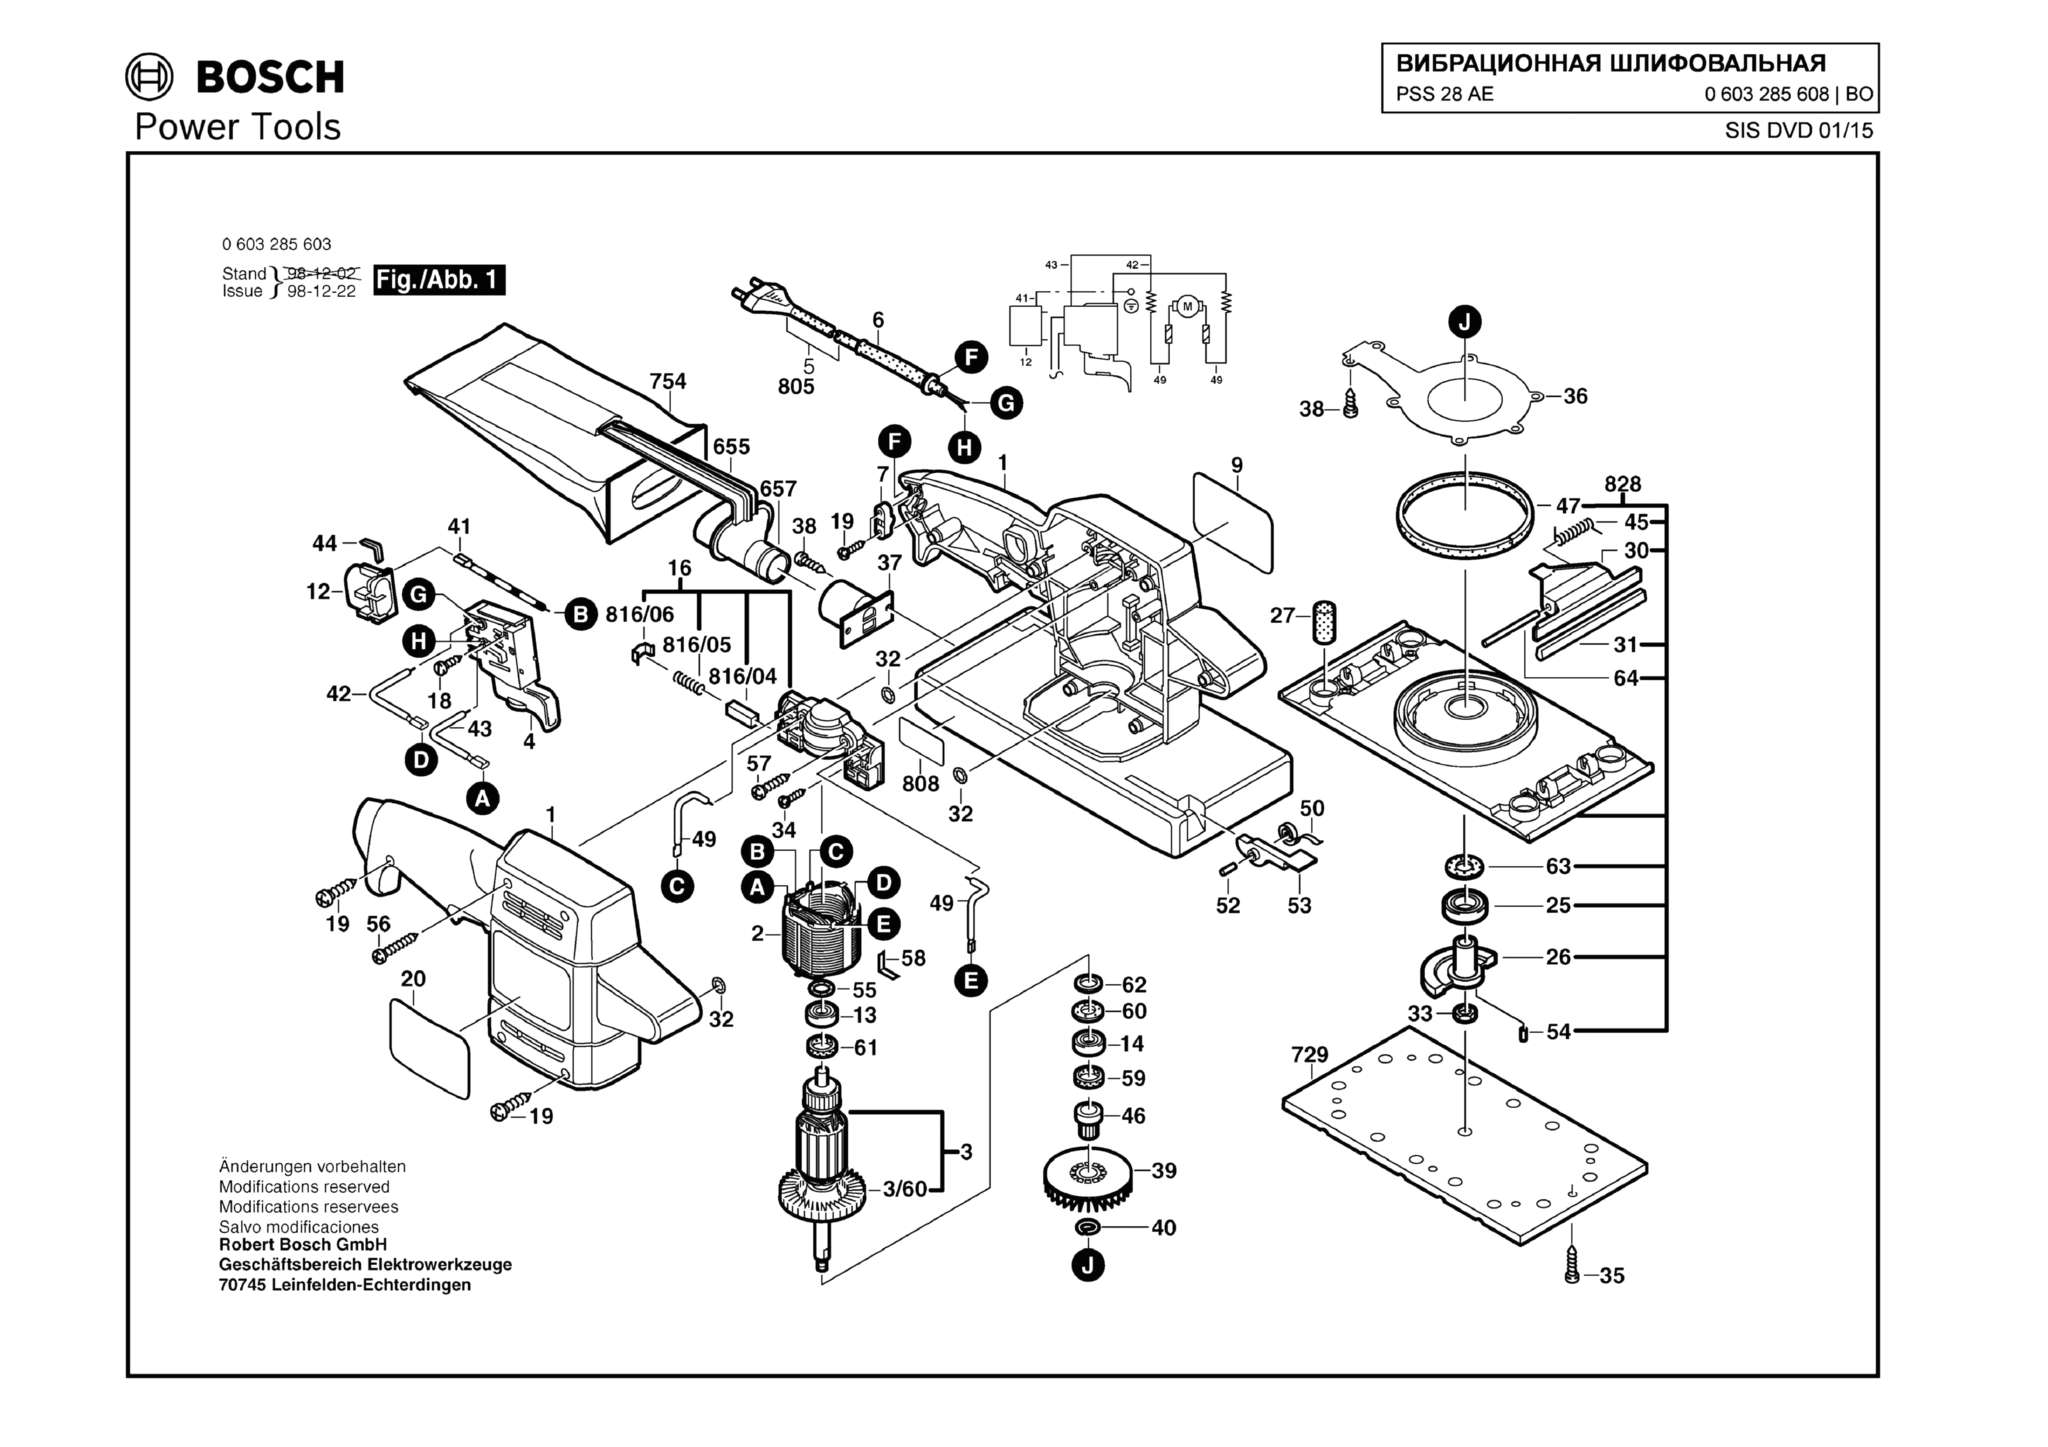 Запчасти, схема и деталировка Bosch PSS 28 AE (ТИП 0603285608)